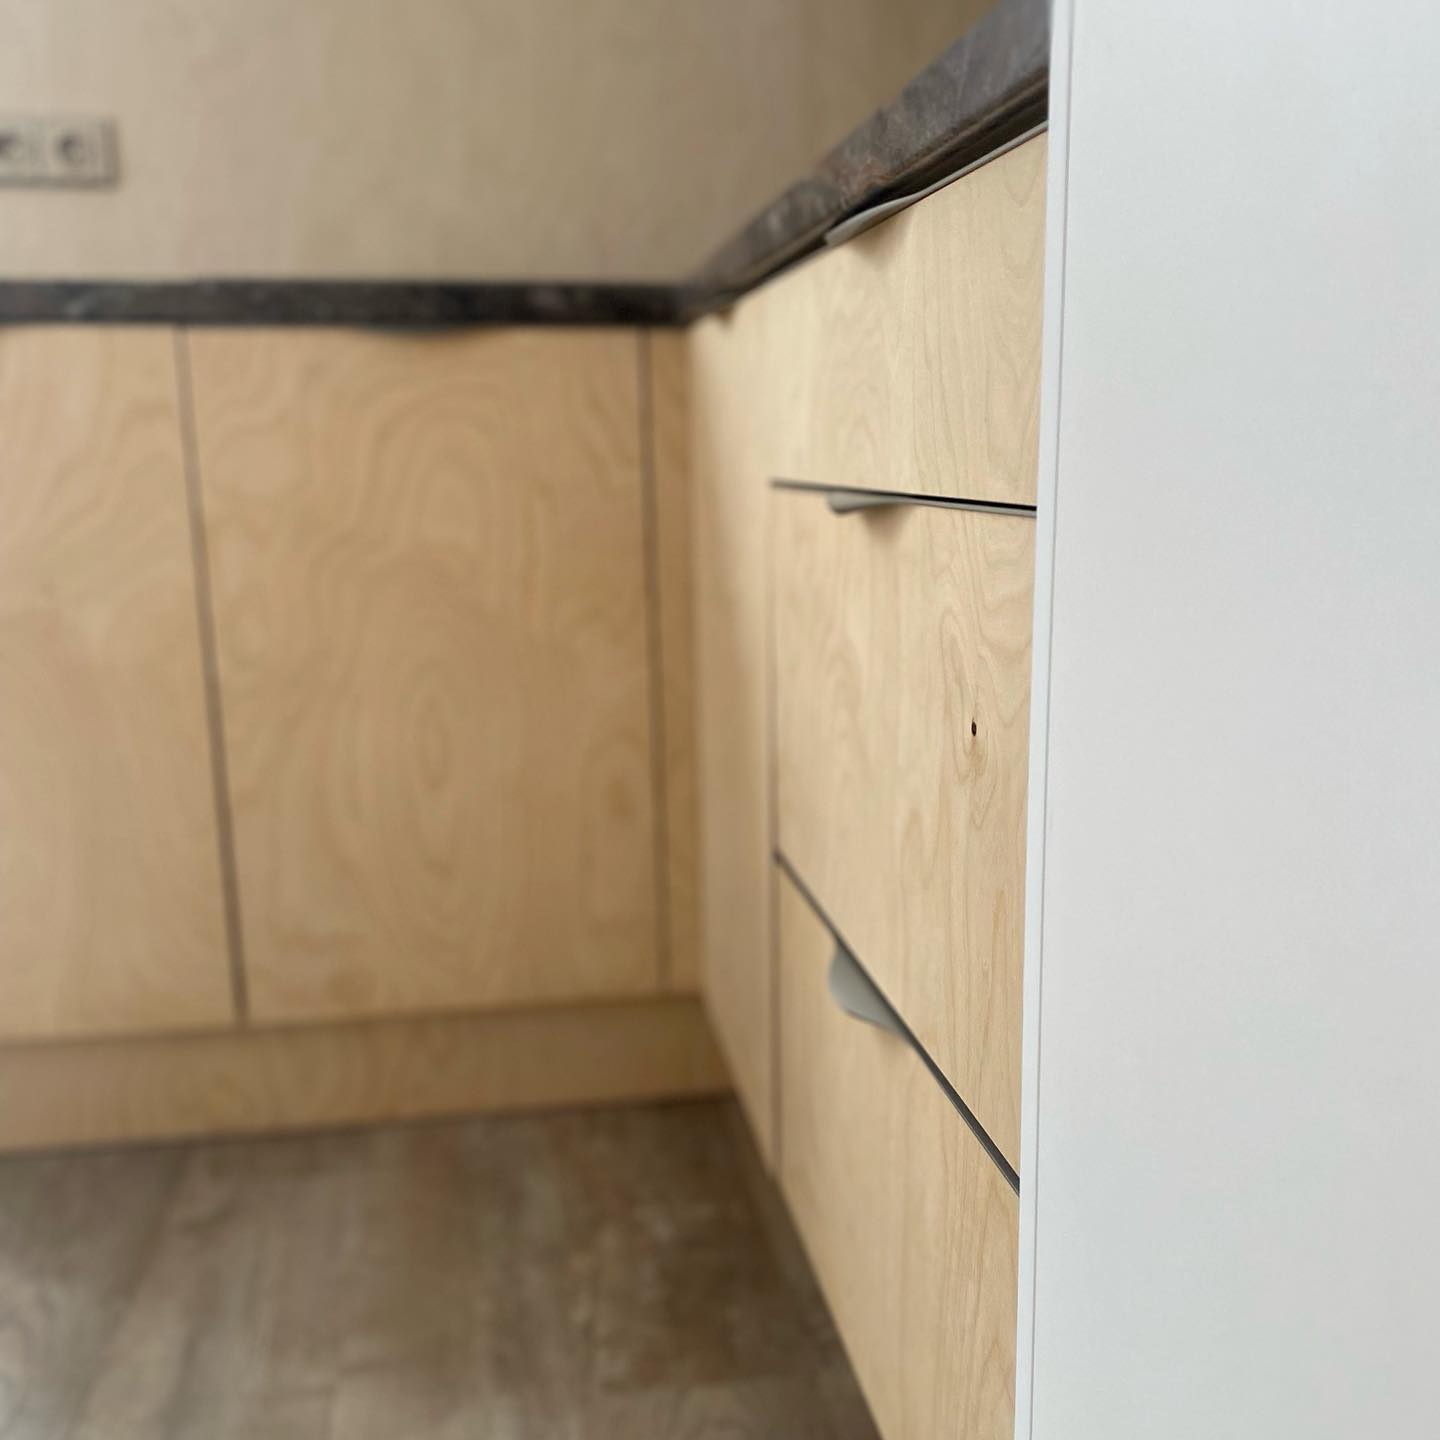 🇨🇿 Překližka může být jedinečná kdekoliv 🤩
🇬🇧 Plywood can be unique anywhere 🤩

#plywoodisourpassion #orlimex #plywood #experts #worldwide #kitchen #kitchendesign #home